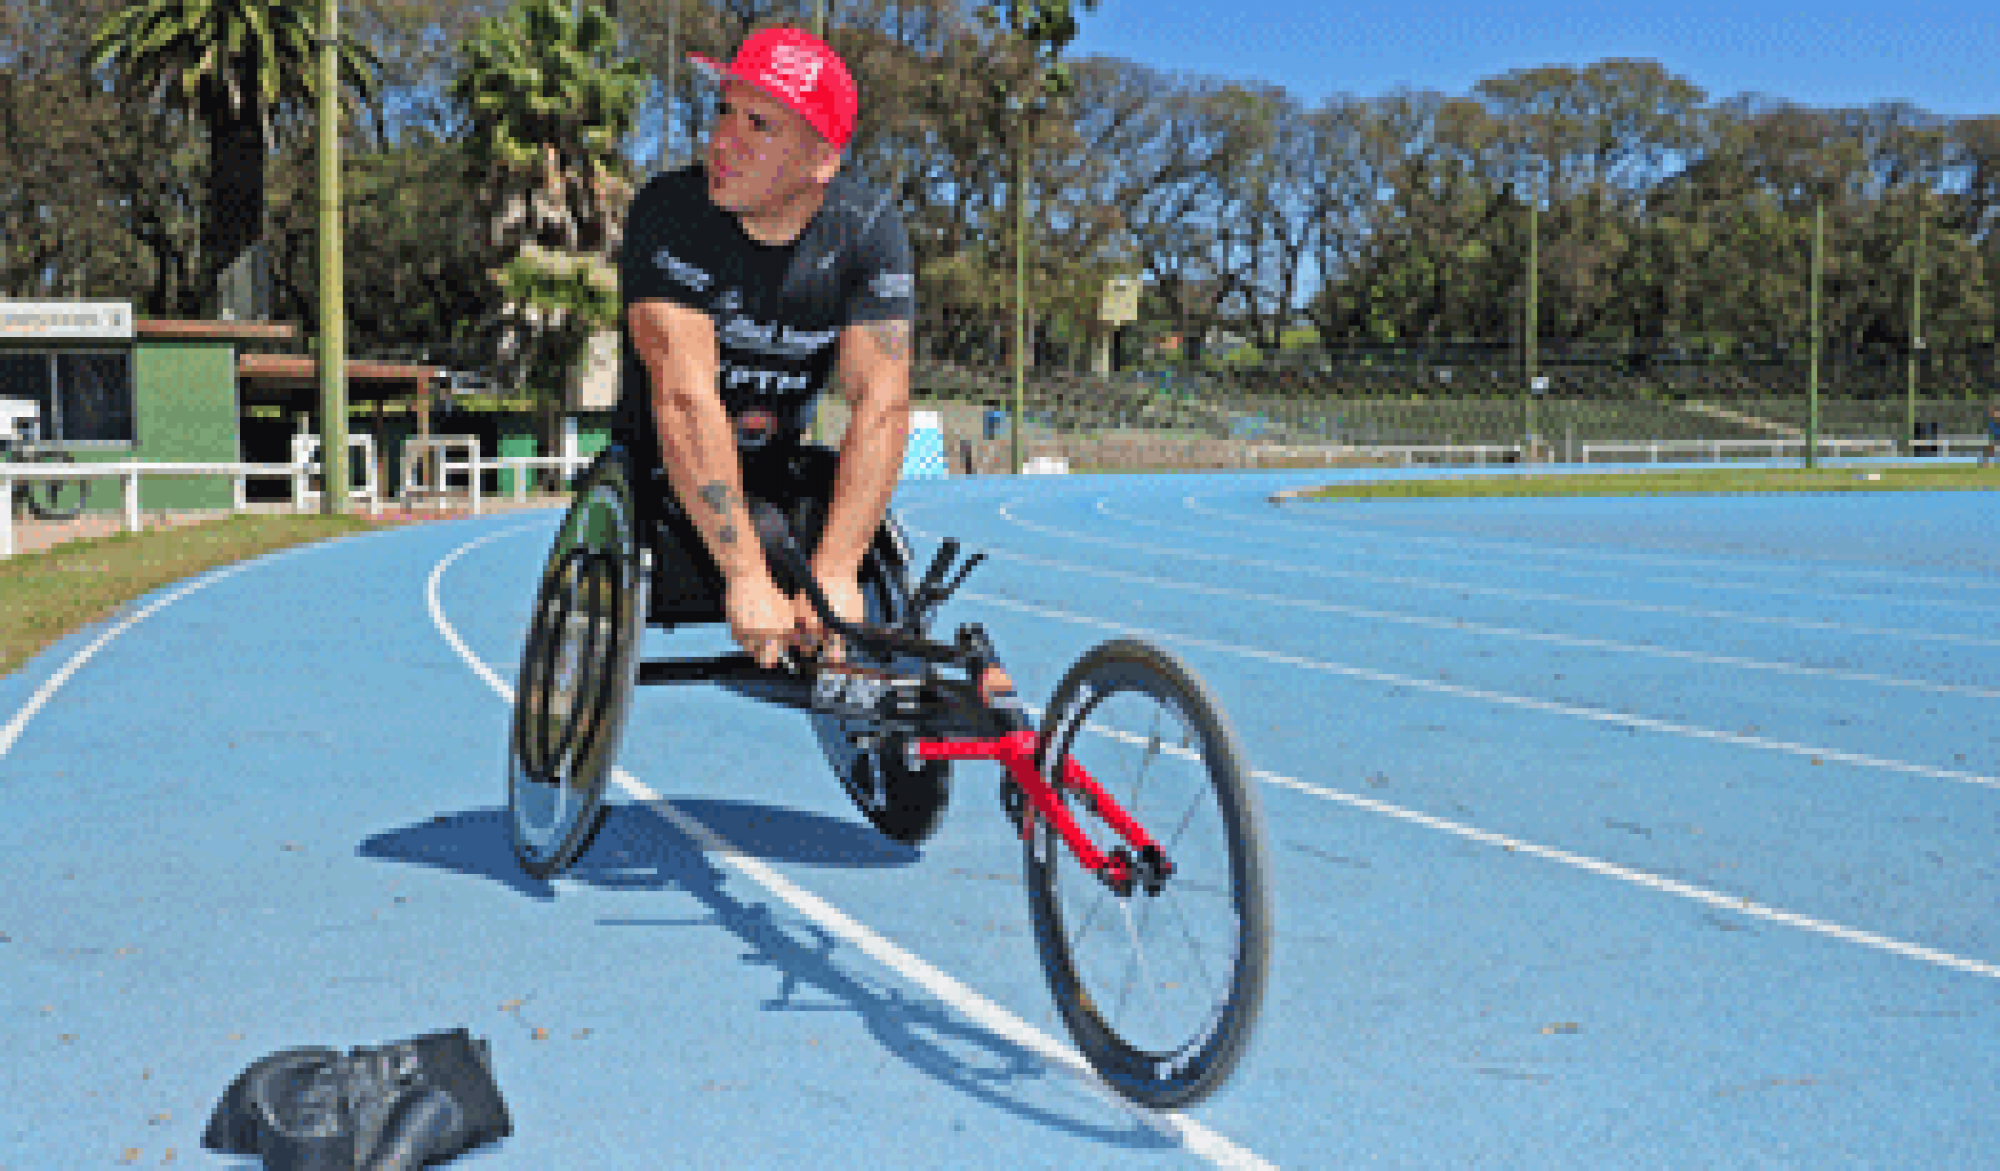 Secretaría Nacional del Deporte adquirió una silla de atletismo para el competidor paralímpico Eduardo Dutra.